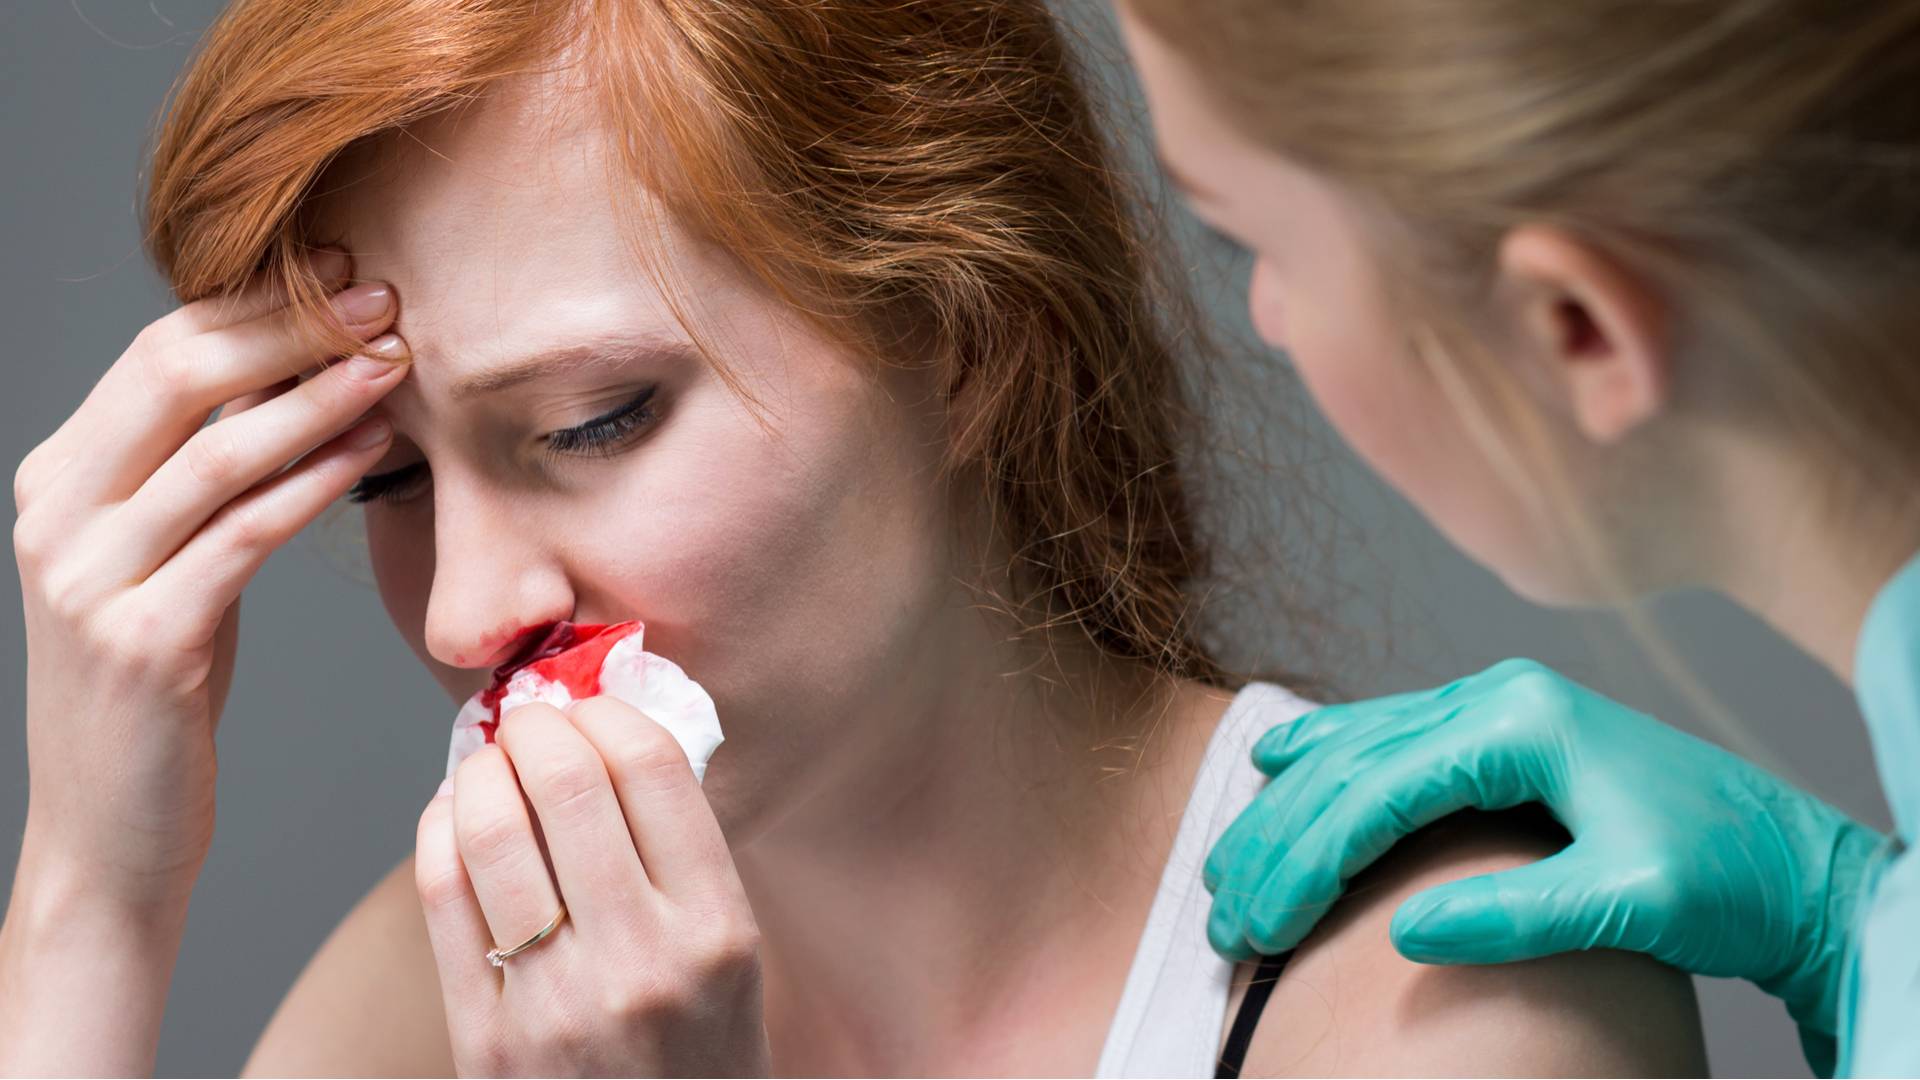 Кровь из носа по утрам — возможные причины и необходимые меры